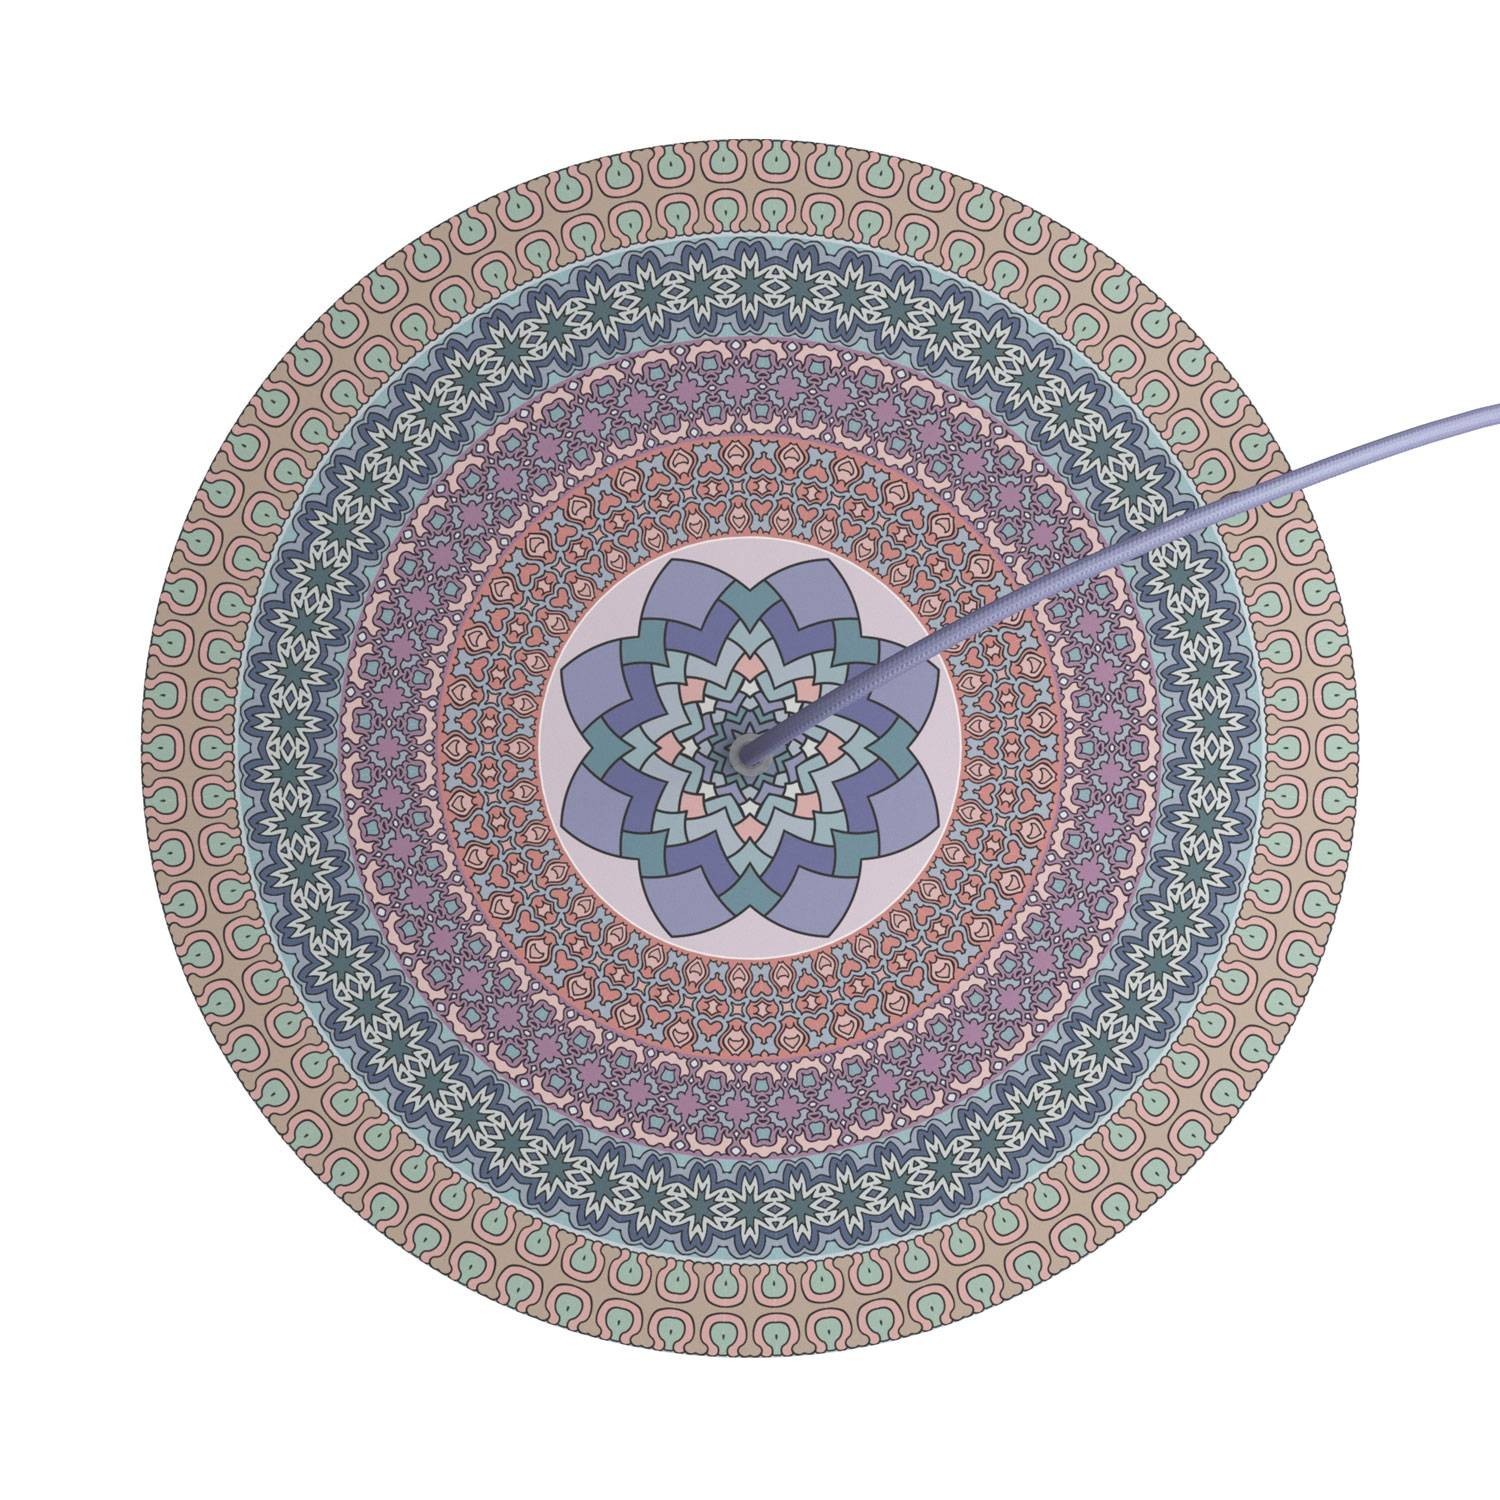 Rundes XXL 1-Loch und 4 Seitenlöchern Lampenbaldachin, Rose-One-Abdeckung, 400 mm Durchmesser - PROMO